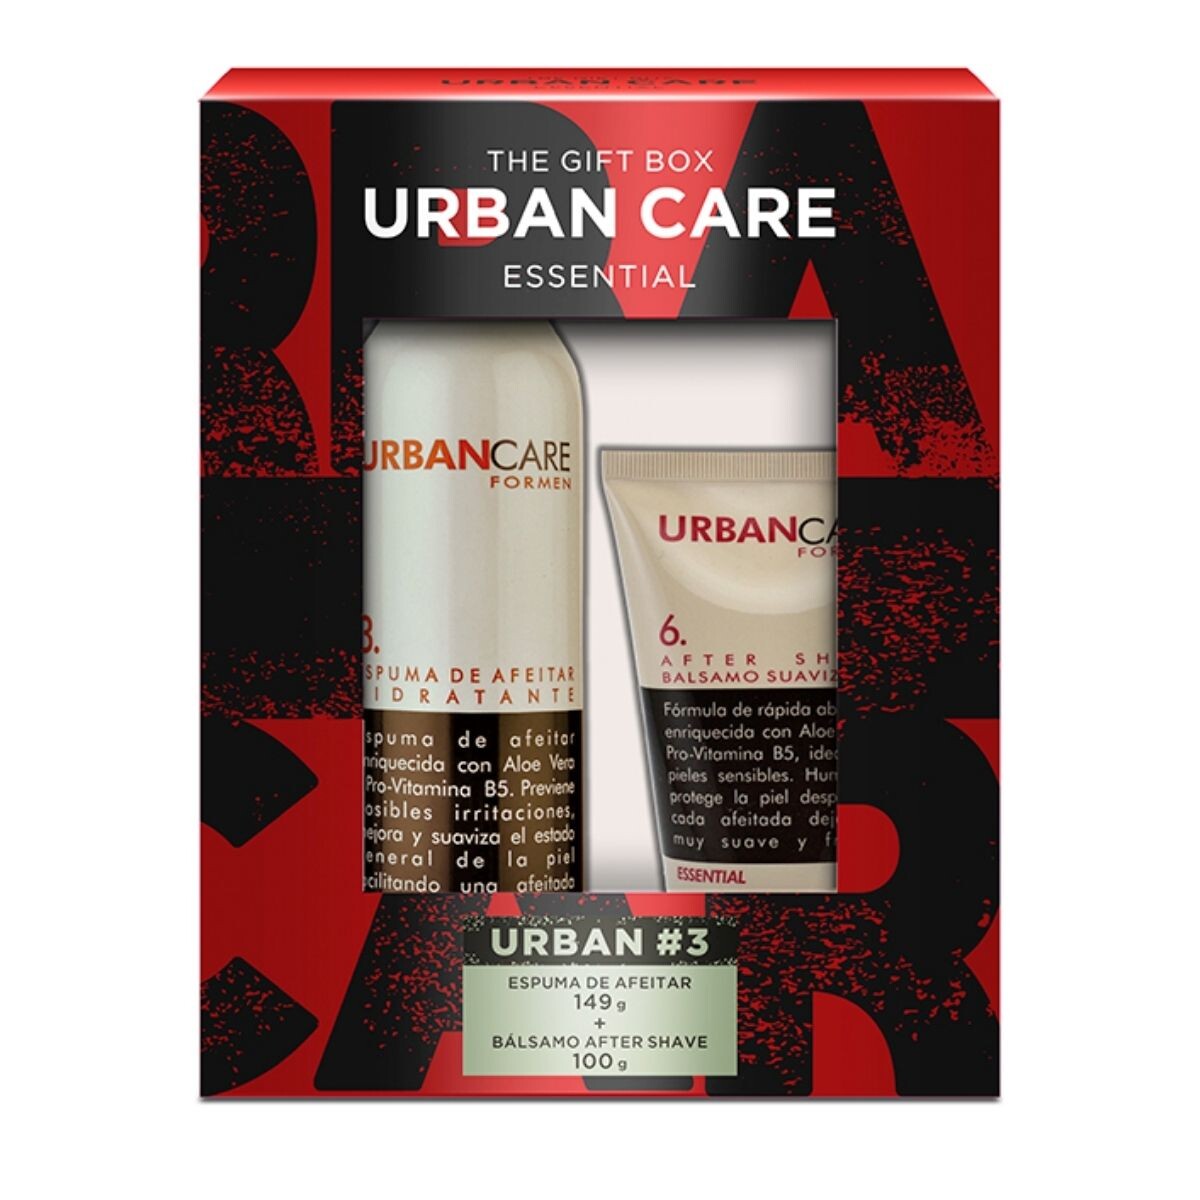 Espuma de Afeitar Urban Care for Men Essential 149 GR + After Shave 100 GR 